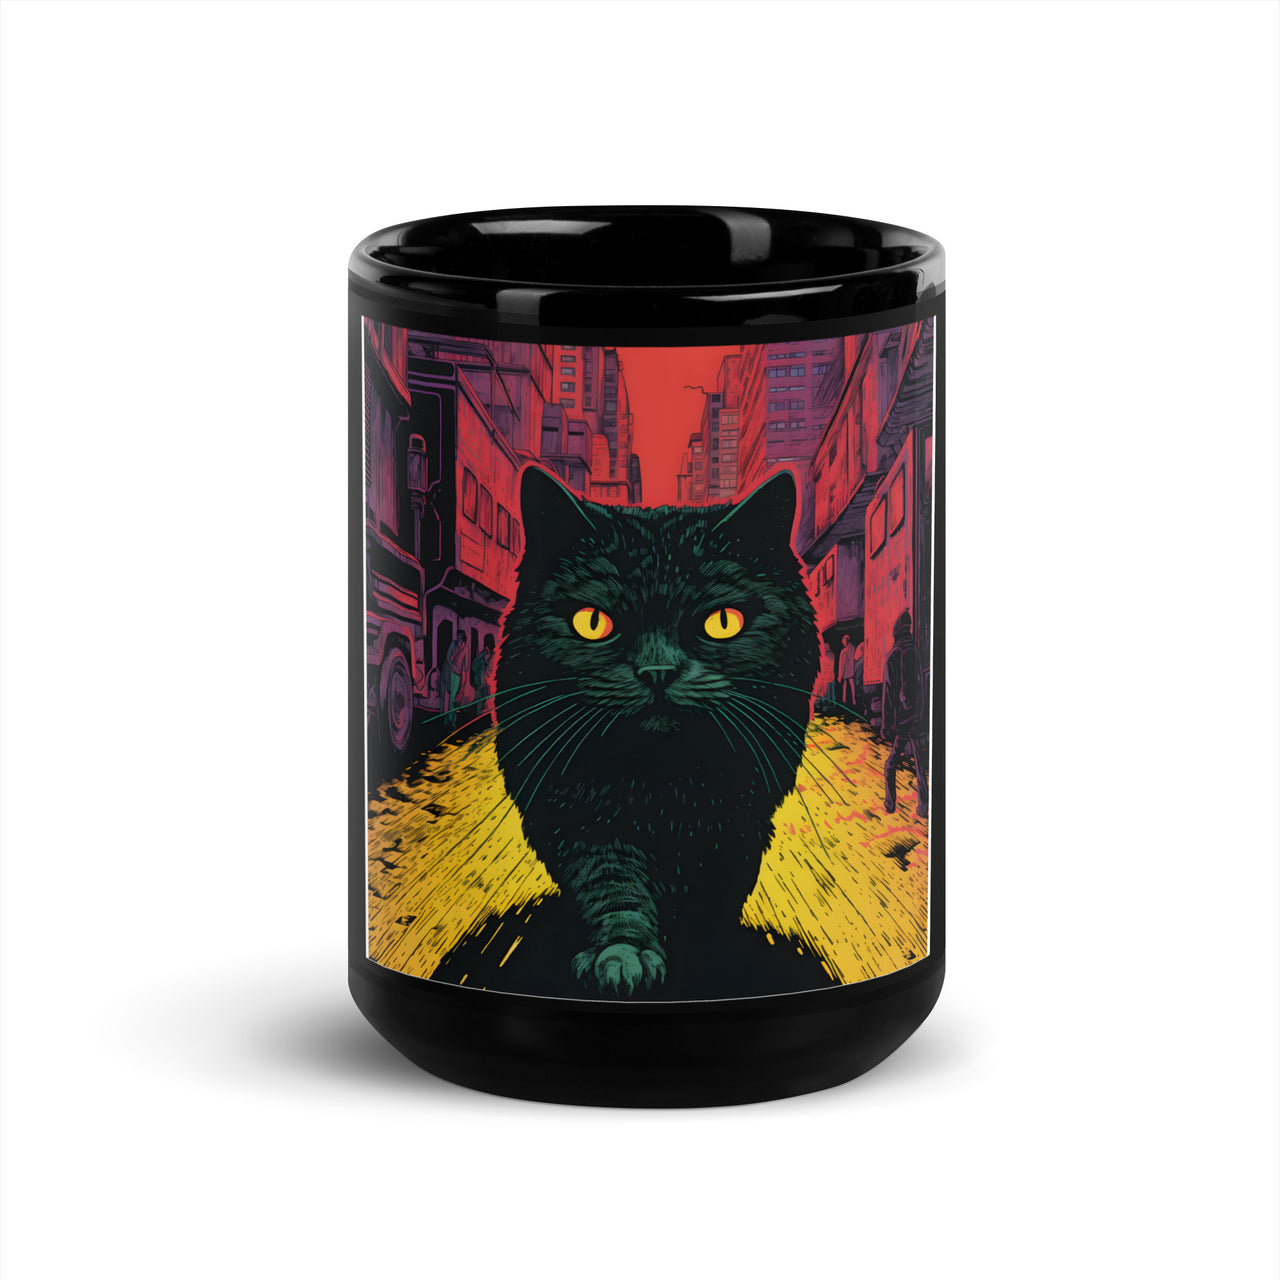 Urban Feline: Giant Cat in Cityscape Black Mug